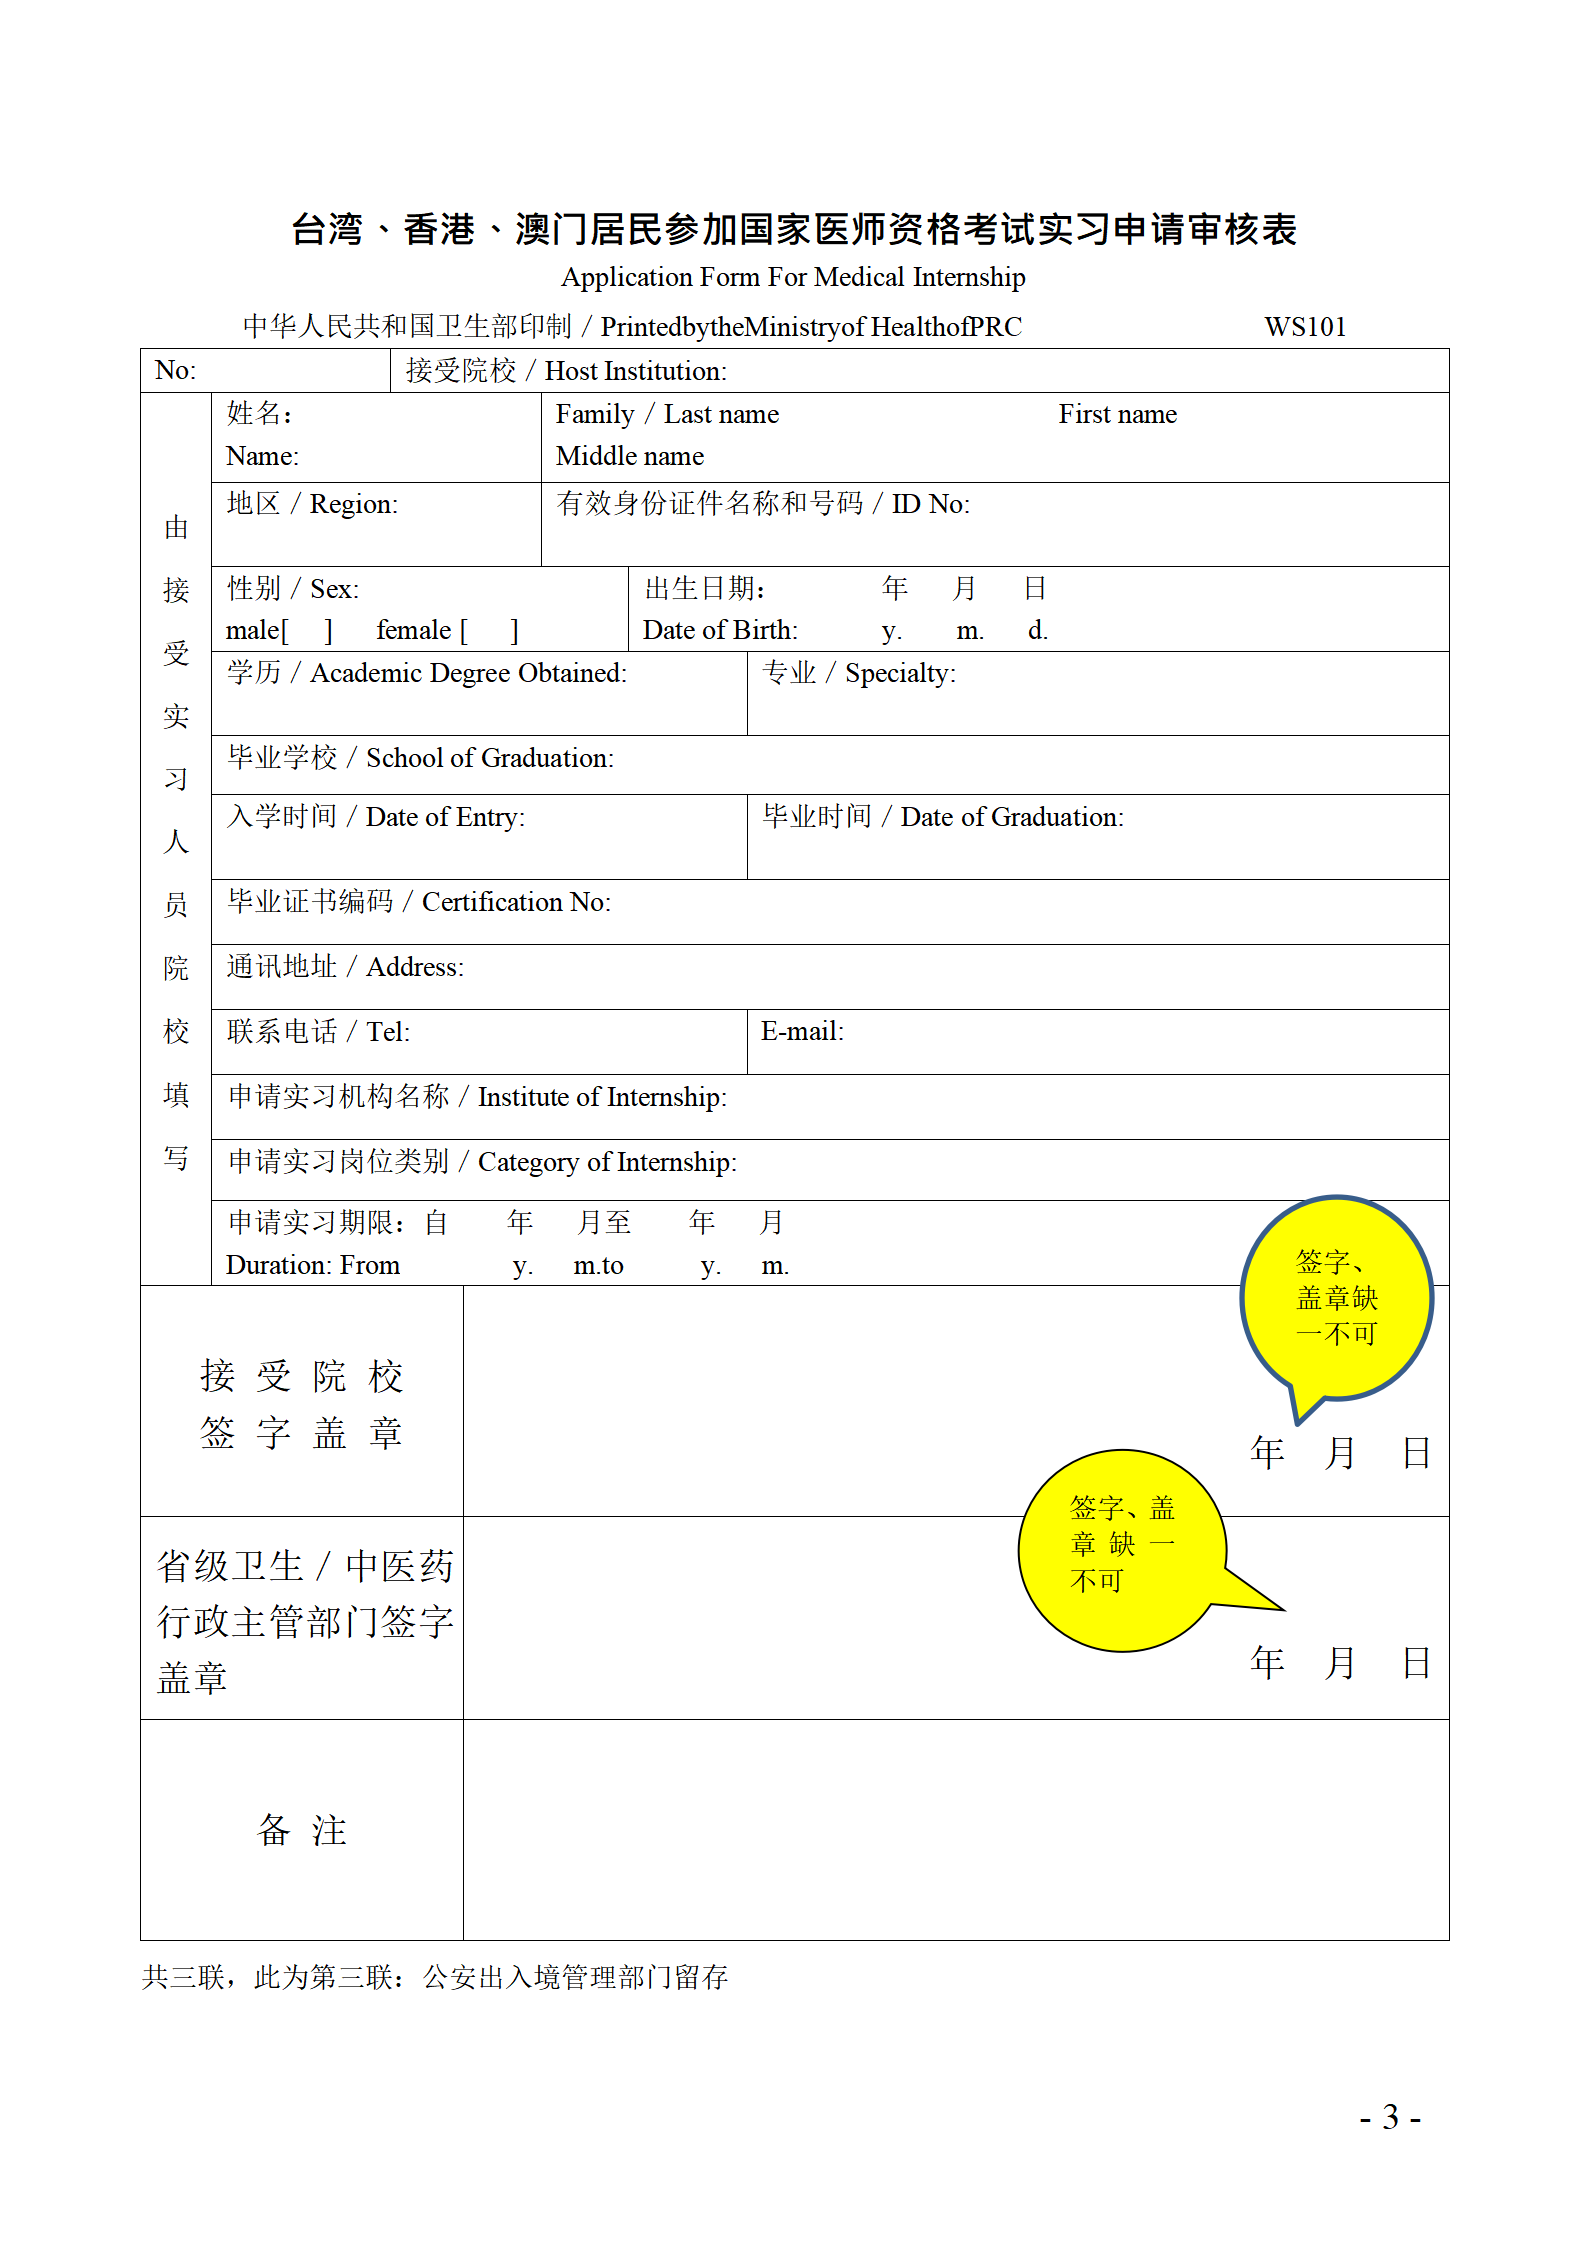 台湾、香港、澳门居民参加国家医师资格考试实习申请审核表填写说明_03